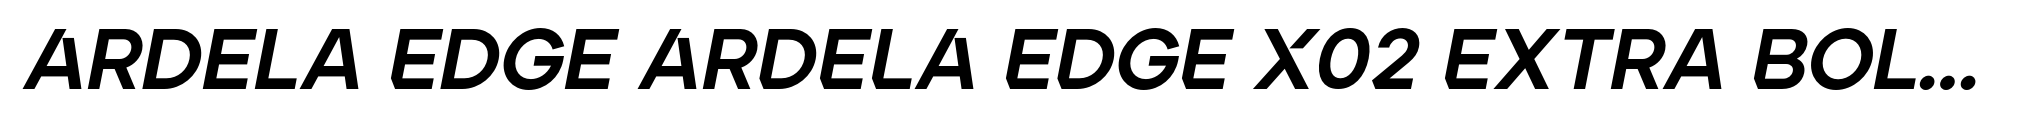 Ardela Edge ARDELA EDGE X02 Extra Bold Italic image